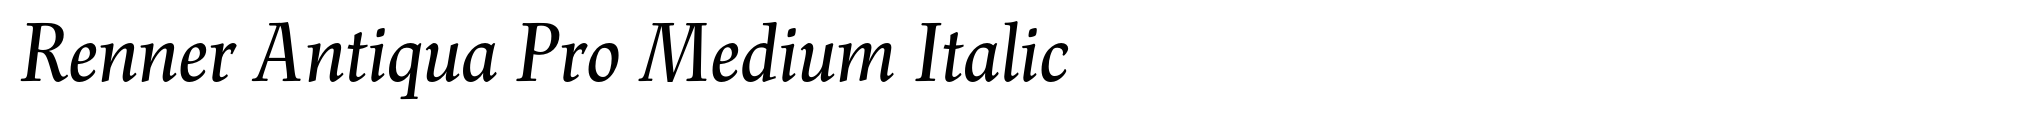 Renner Antiqua Pro Medium Italic image